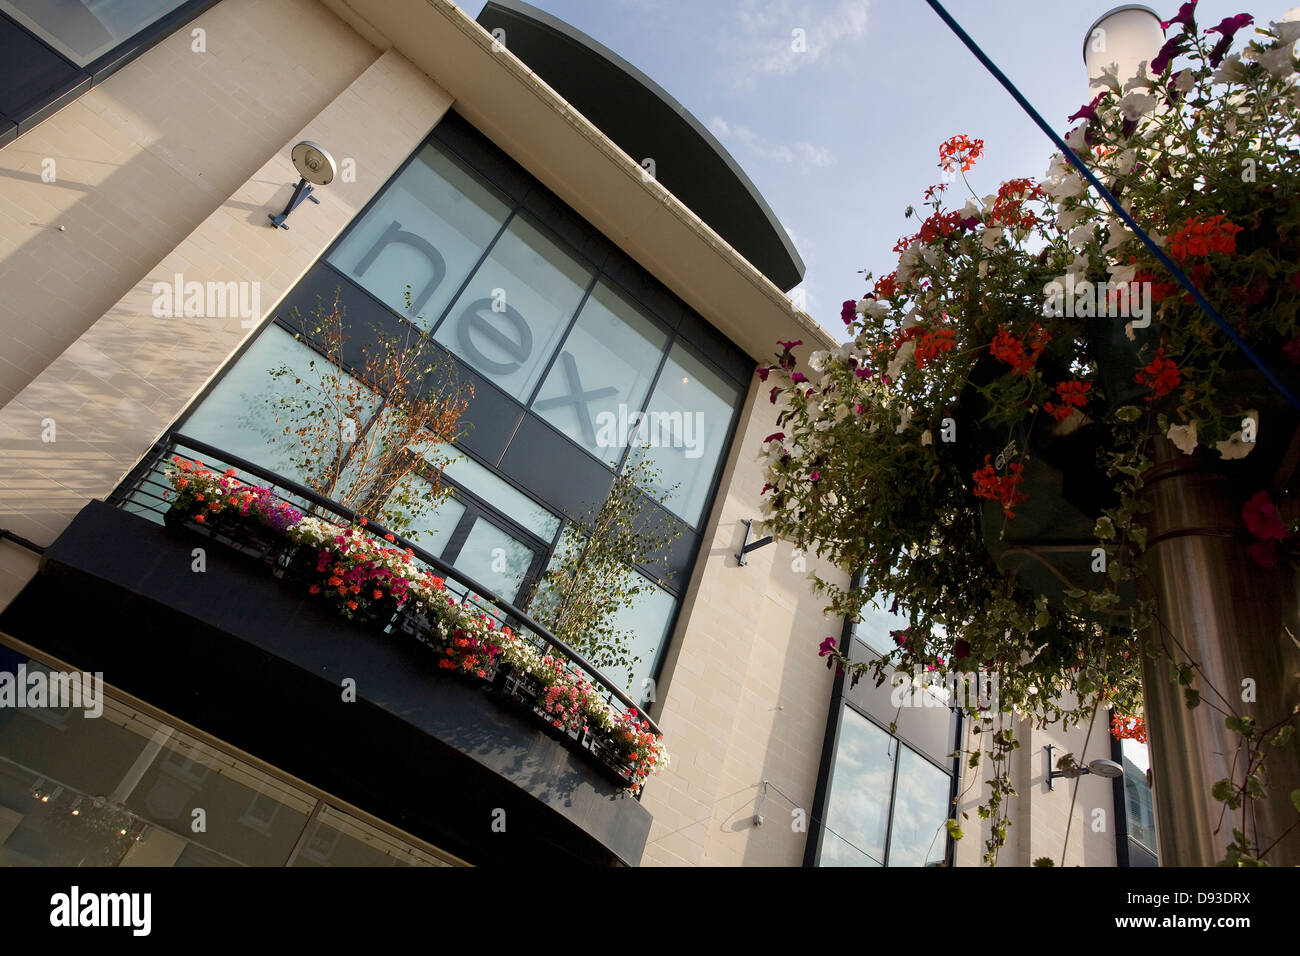 Vitrine de magasin de vêtements à côté de Whitefriars, Canterbury, Kent, England, UK, photographiée à jour ensoleillé, ciel bleu Banque D'Images